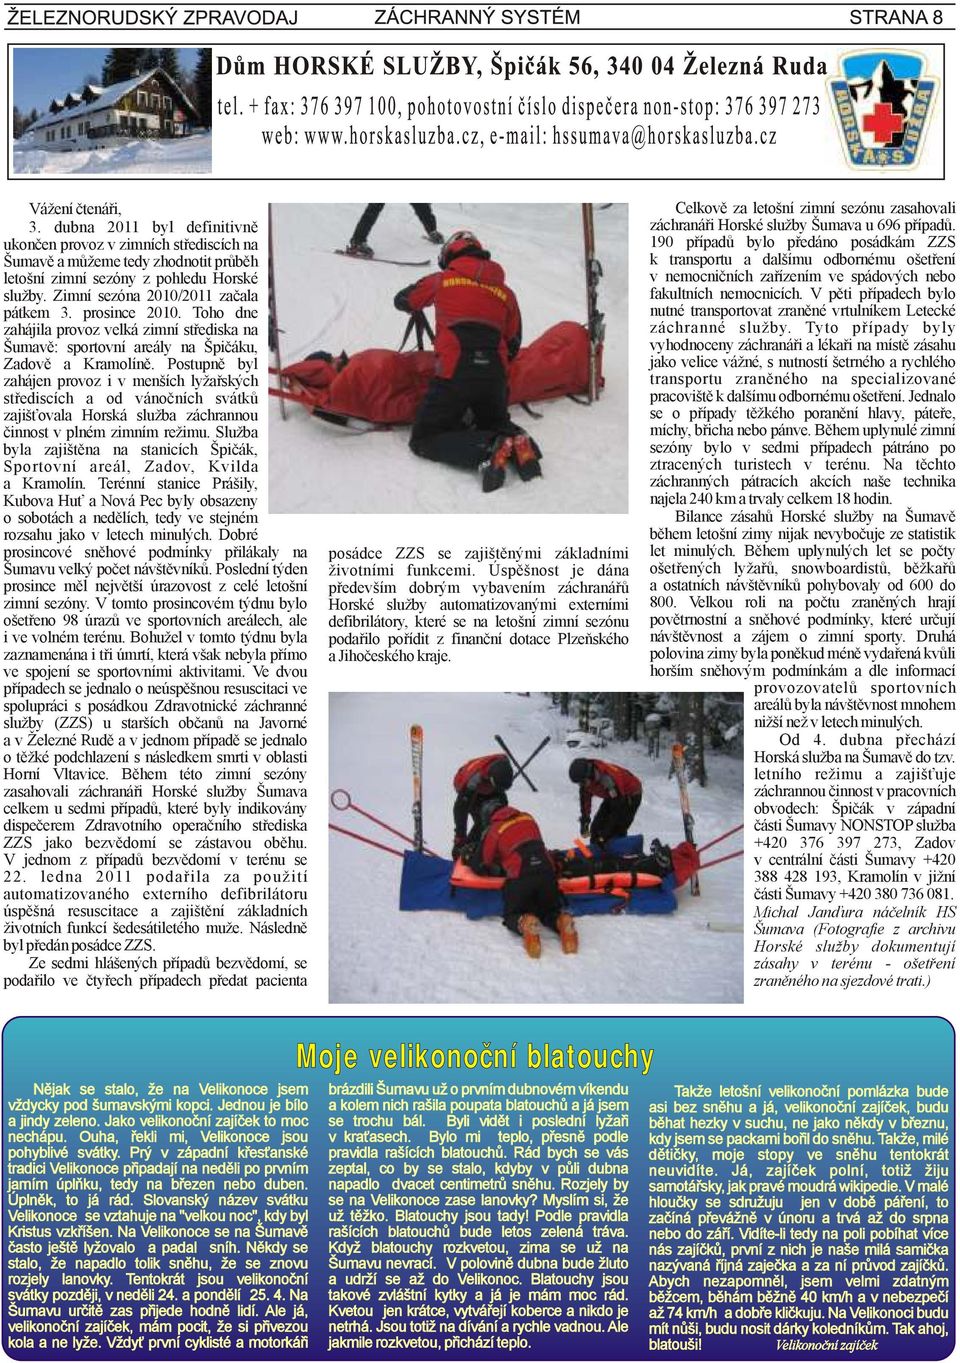 Postupně byl zahájen provoz i v menších lyžařských střediscích a od vánočních svátků zajišťovala Horská služba záchrannou činnost v plném zimním režimu.